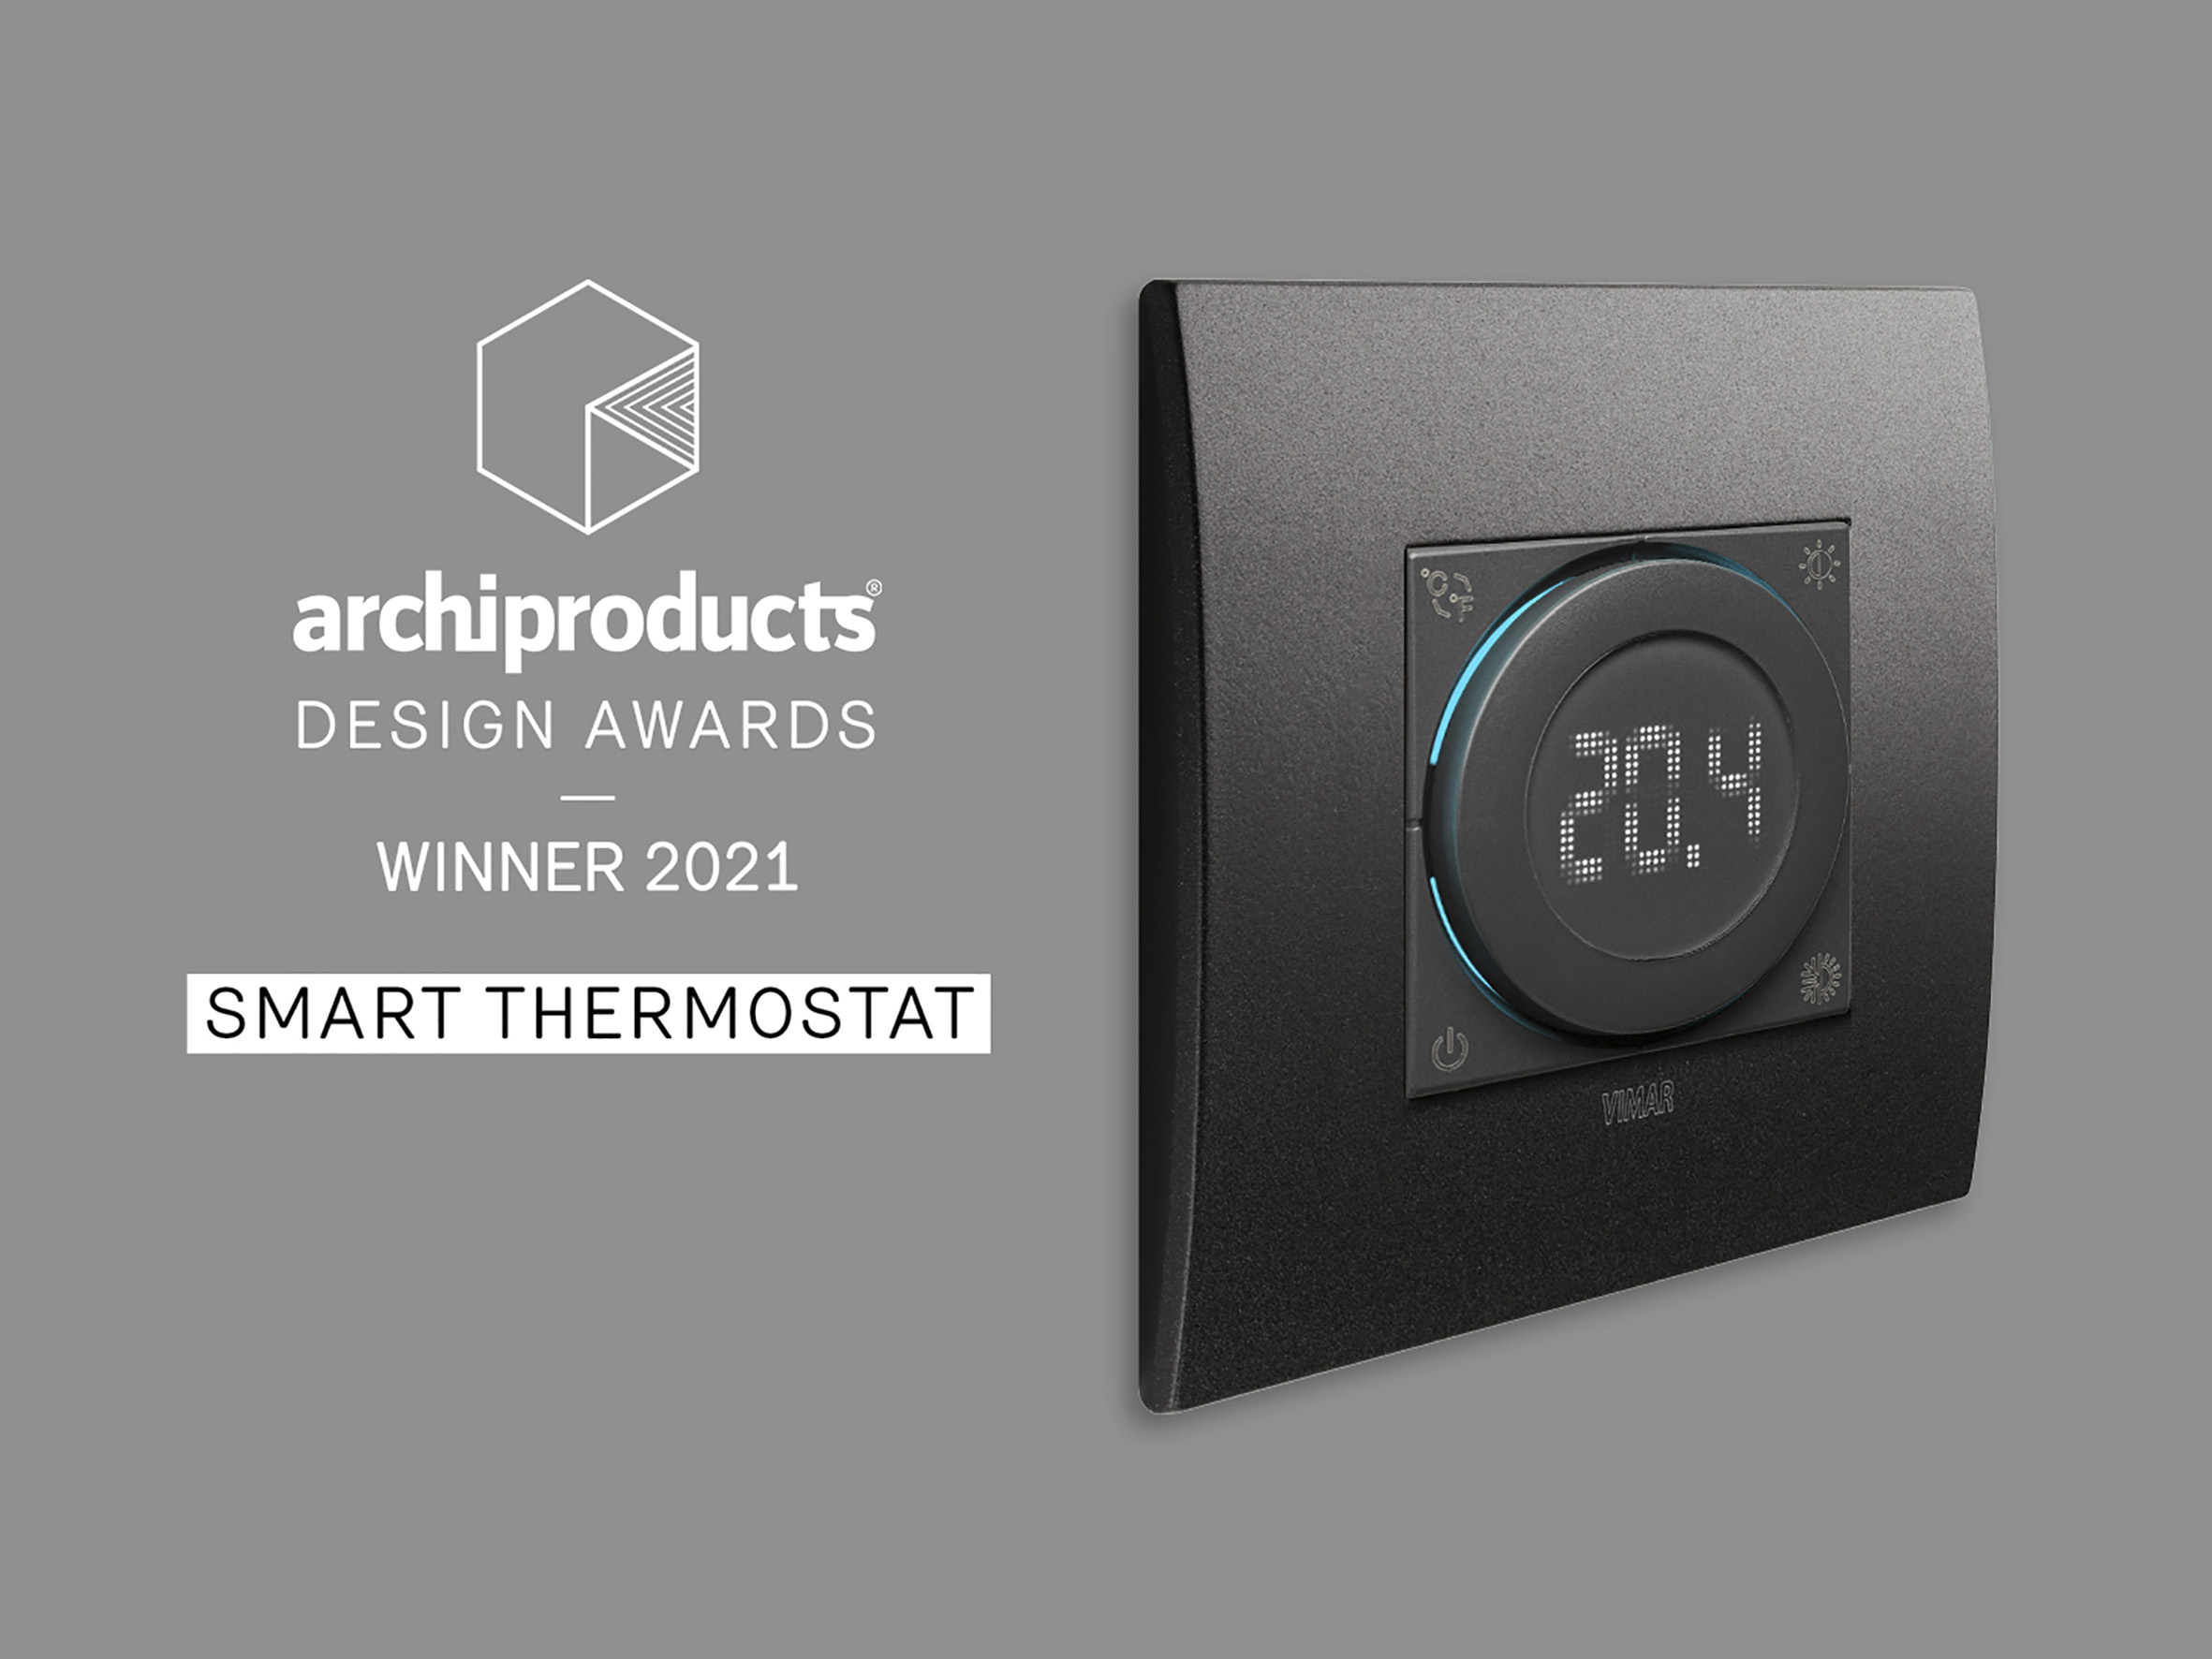 Il termostato smart a rotella vince l'Archiproducts Design Awards 2021